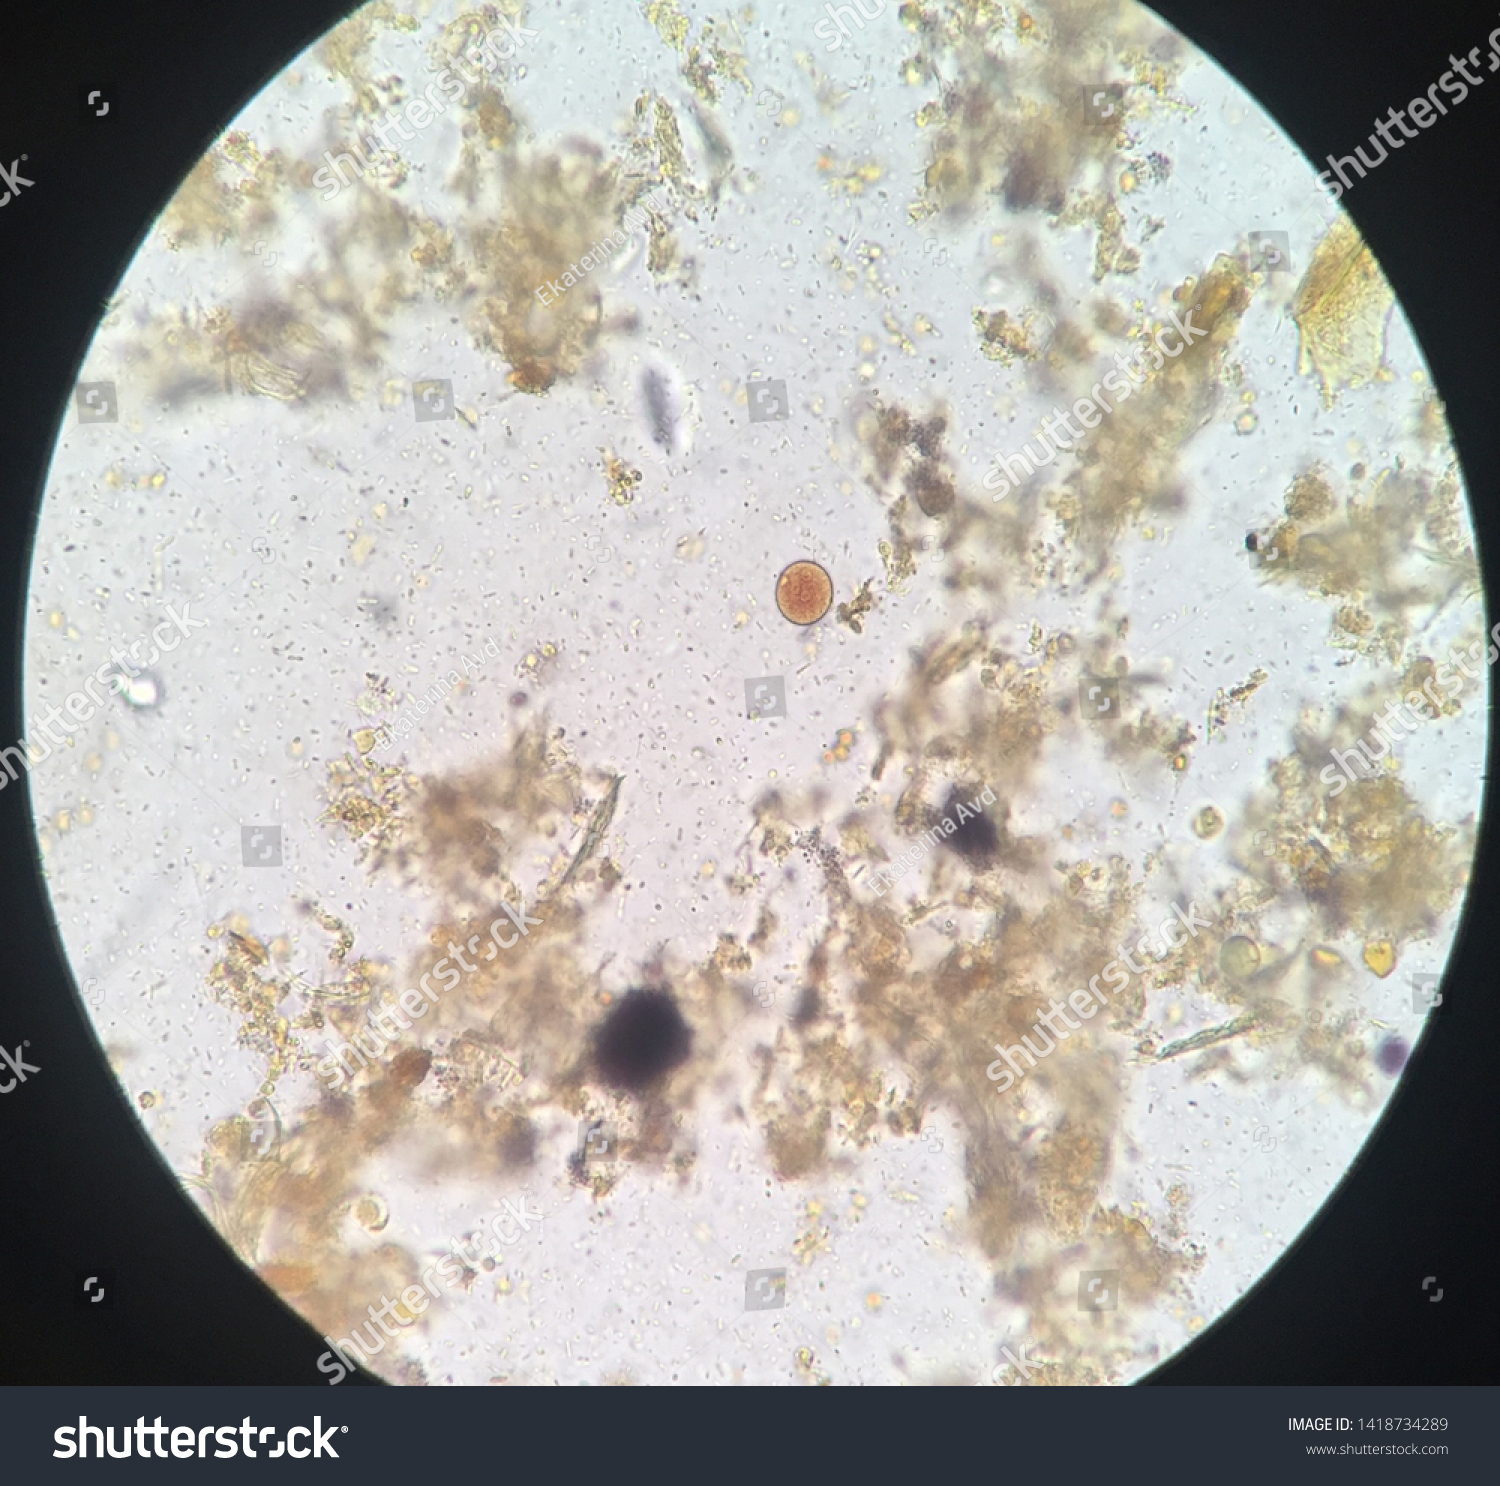 entamoeba coli